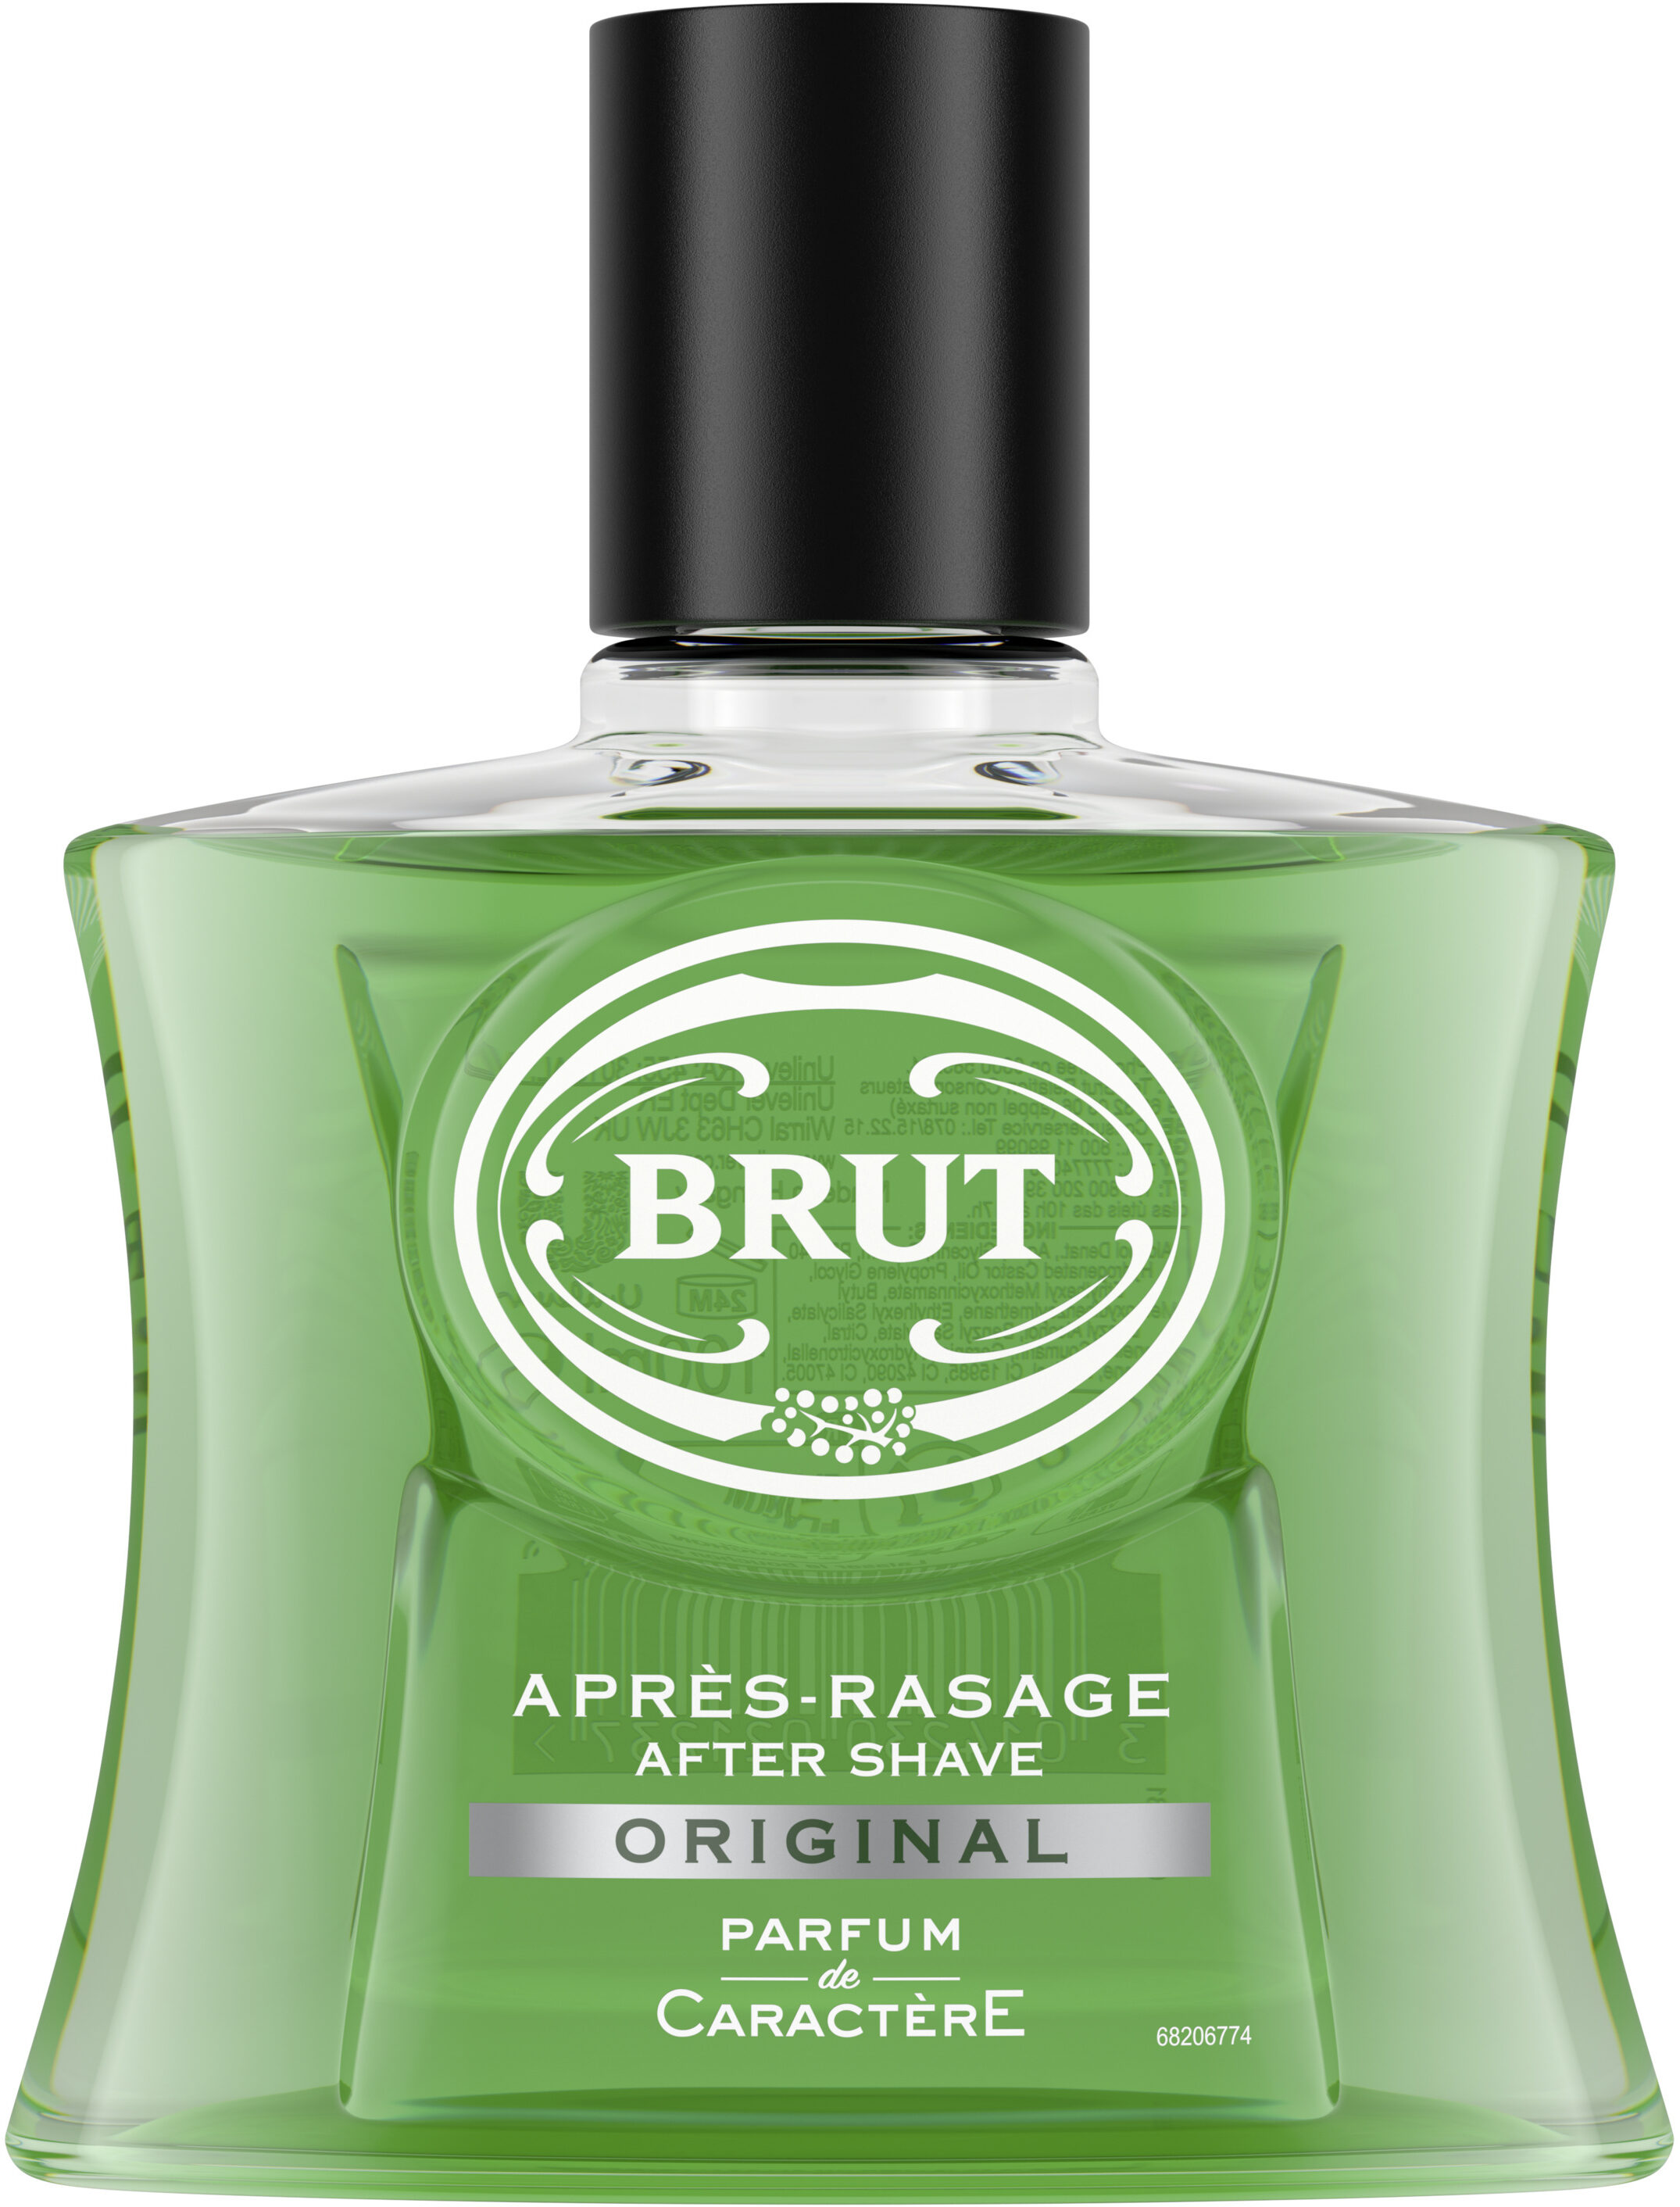 Brut Après-Rasage Flacon Original 100ml - Product - fr